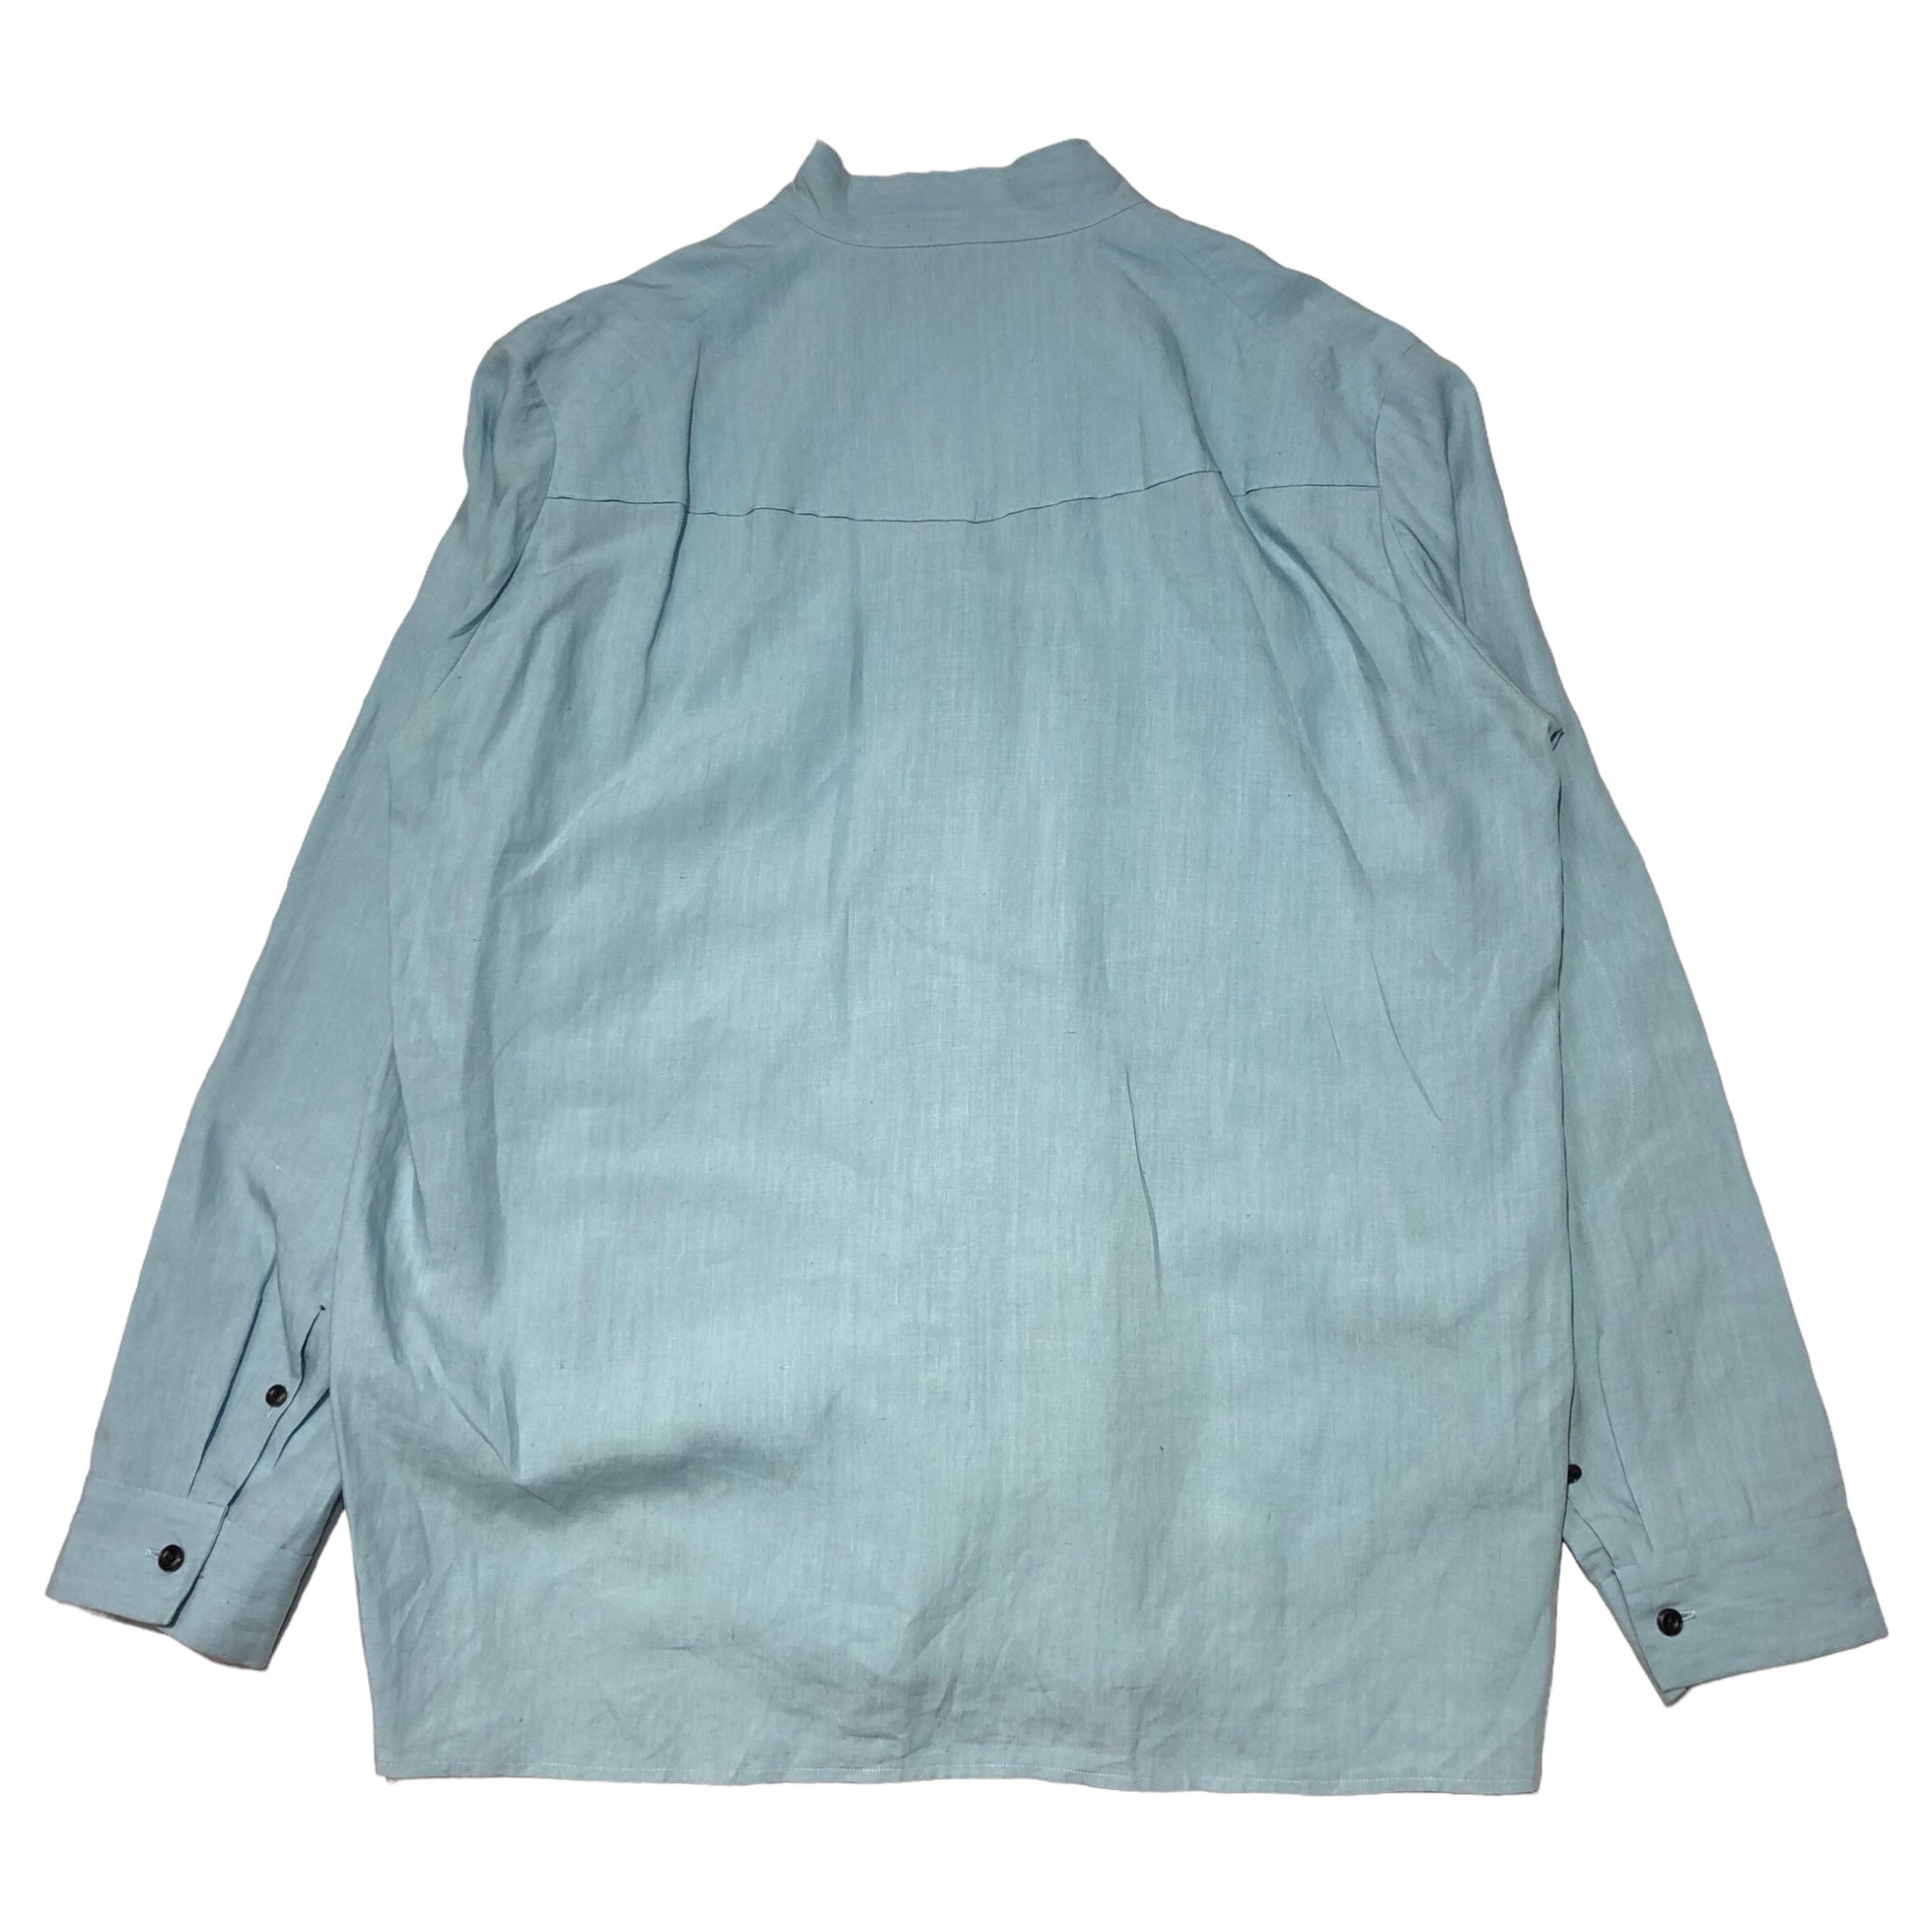 SUNSEA(サンシー) 18SS Linen Zip Shirt 2 リネン ジップシャツ 18S15 2(M) ライトブルー